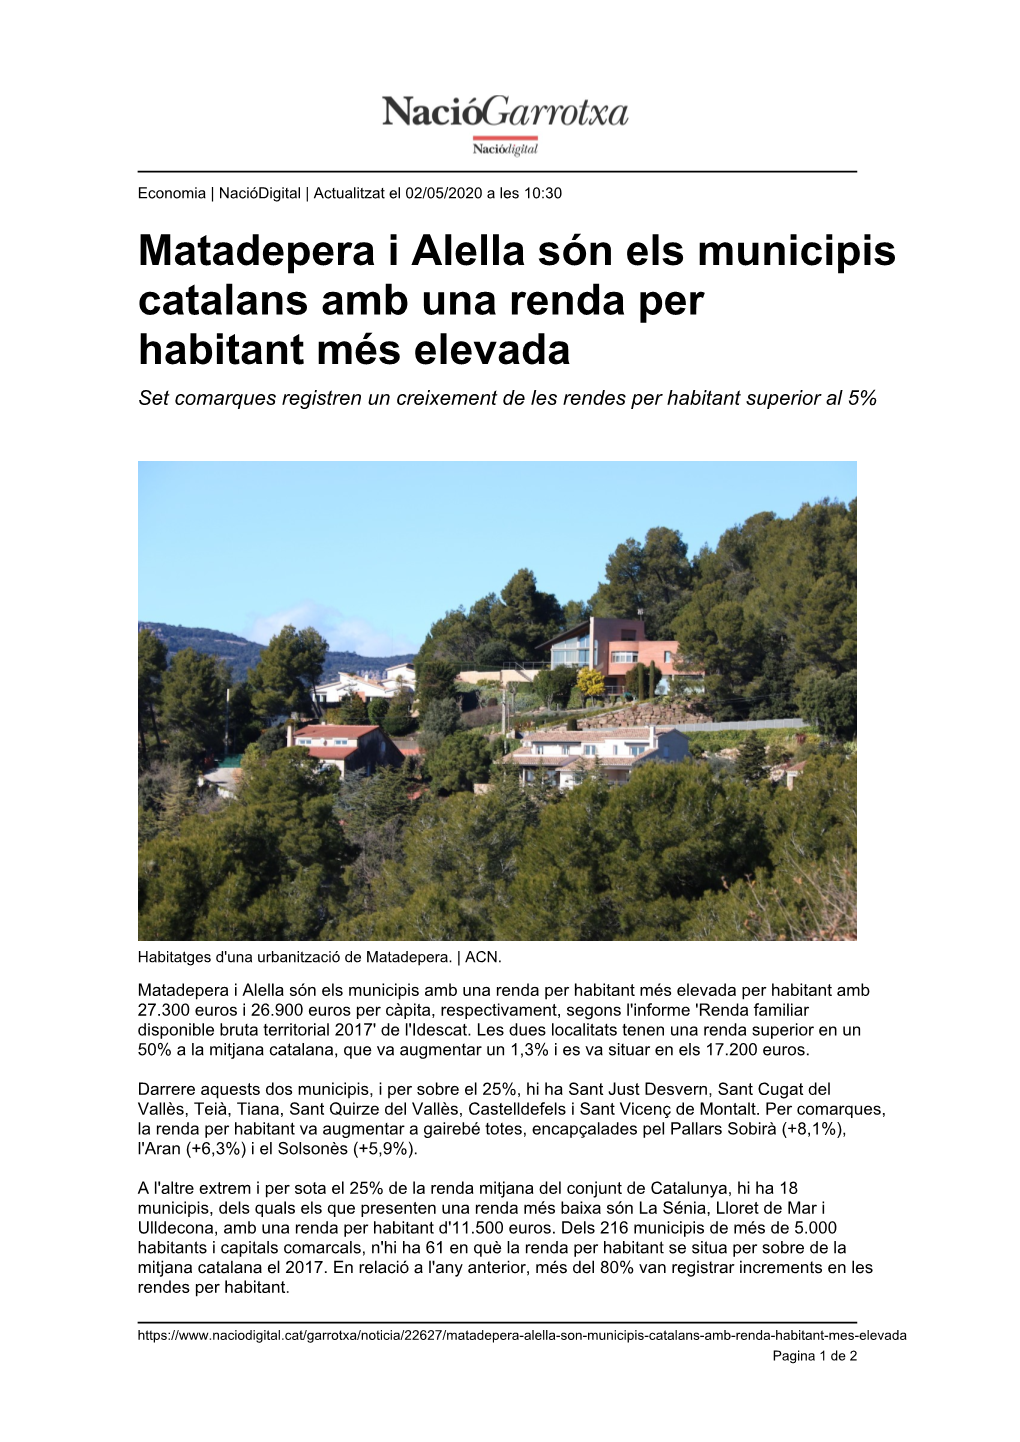 Matadepera I Alella Són Els Municipis Catalans Amb Una Renda Per Habitant Més Elevada Set Comarques Registren Un Creixement De Les Rendes Per Habitant Superior Al 5%